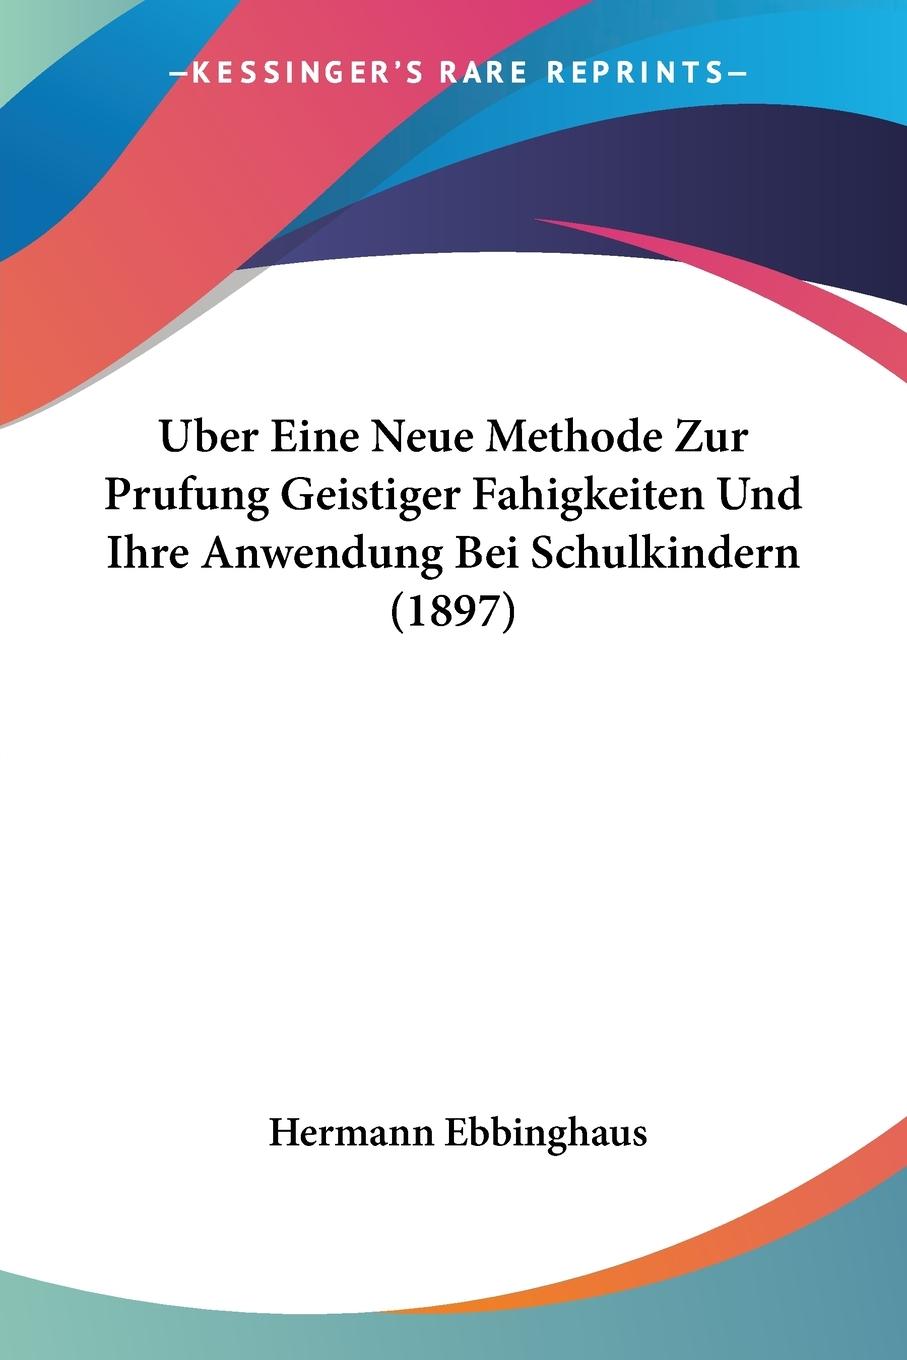 Uber Eine Neue Methode Zur Prufung Geistiger Fahigkeiten Und Ihre Anwendung Bei Schulkindern (1897) - Ebbinghaus, Hermann